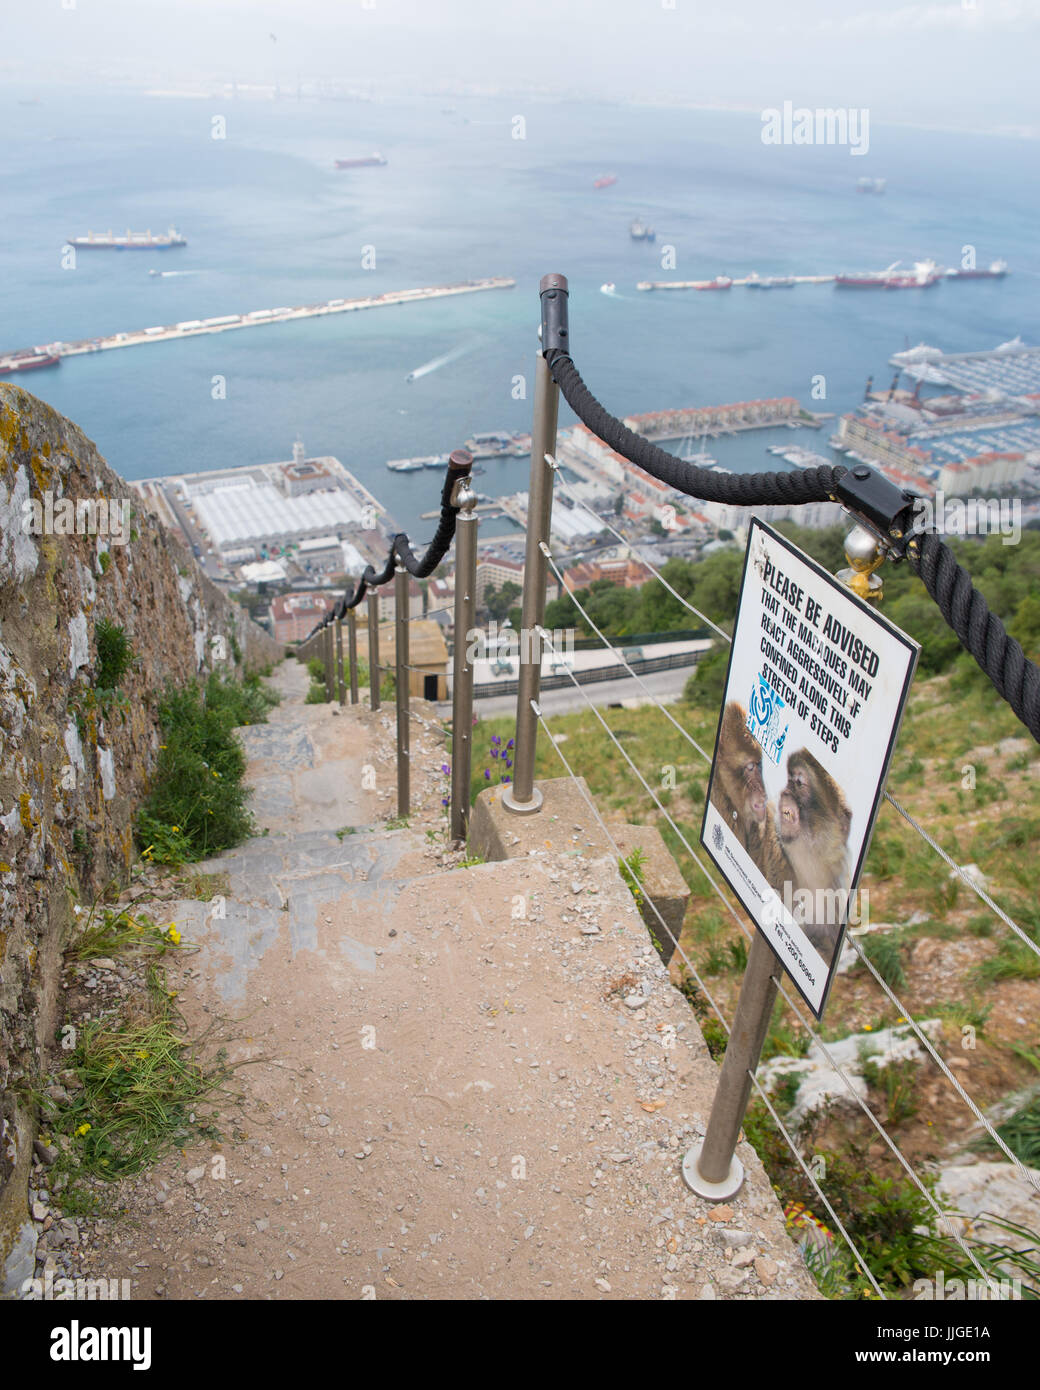 Vue depuis le haut de la roche, à descendre un escalier avec des visiteurs avertissement relatif aux macaques de barbarie sauvage, le rocher de Gibraltar, Banque D'Images